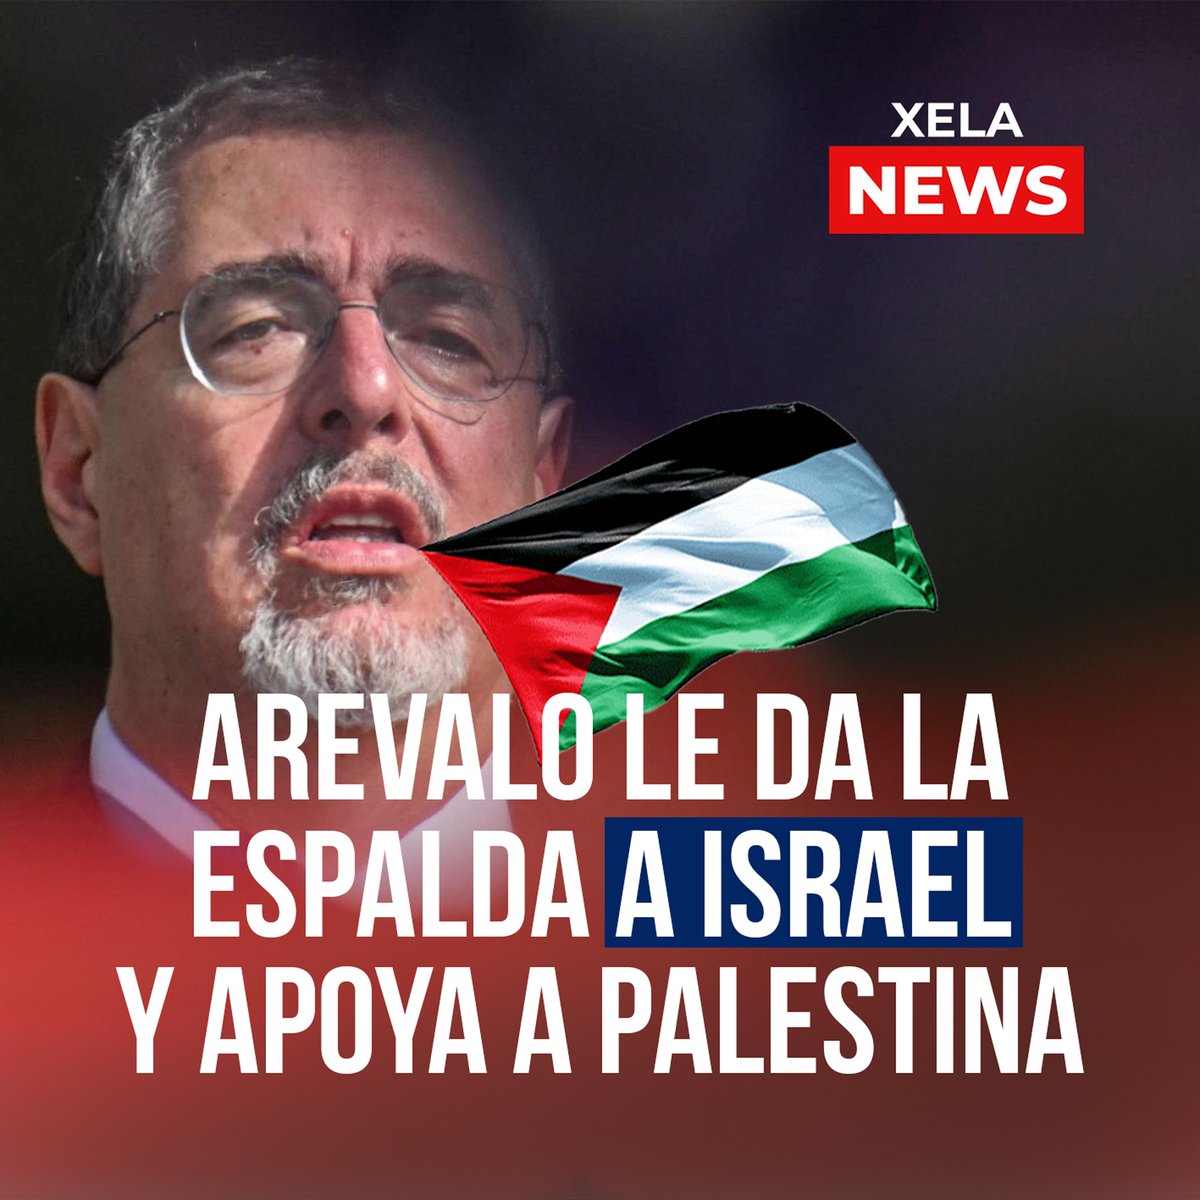 En un giro significativo en la política exterior, hoy 10 de mayo el @GuatemalaGob  de #BernardoArévalo votó a favor de la integración de PALESTINA 🇵🇸 como Estado, en la Asamblea de la #ONU, marcando un cambio trascendental en su alineación con Israel 🇮🇱. 
#XelaNews 🇫🇷